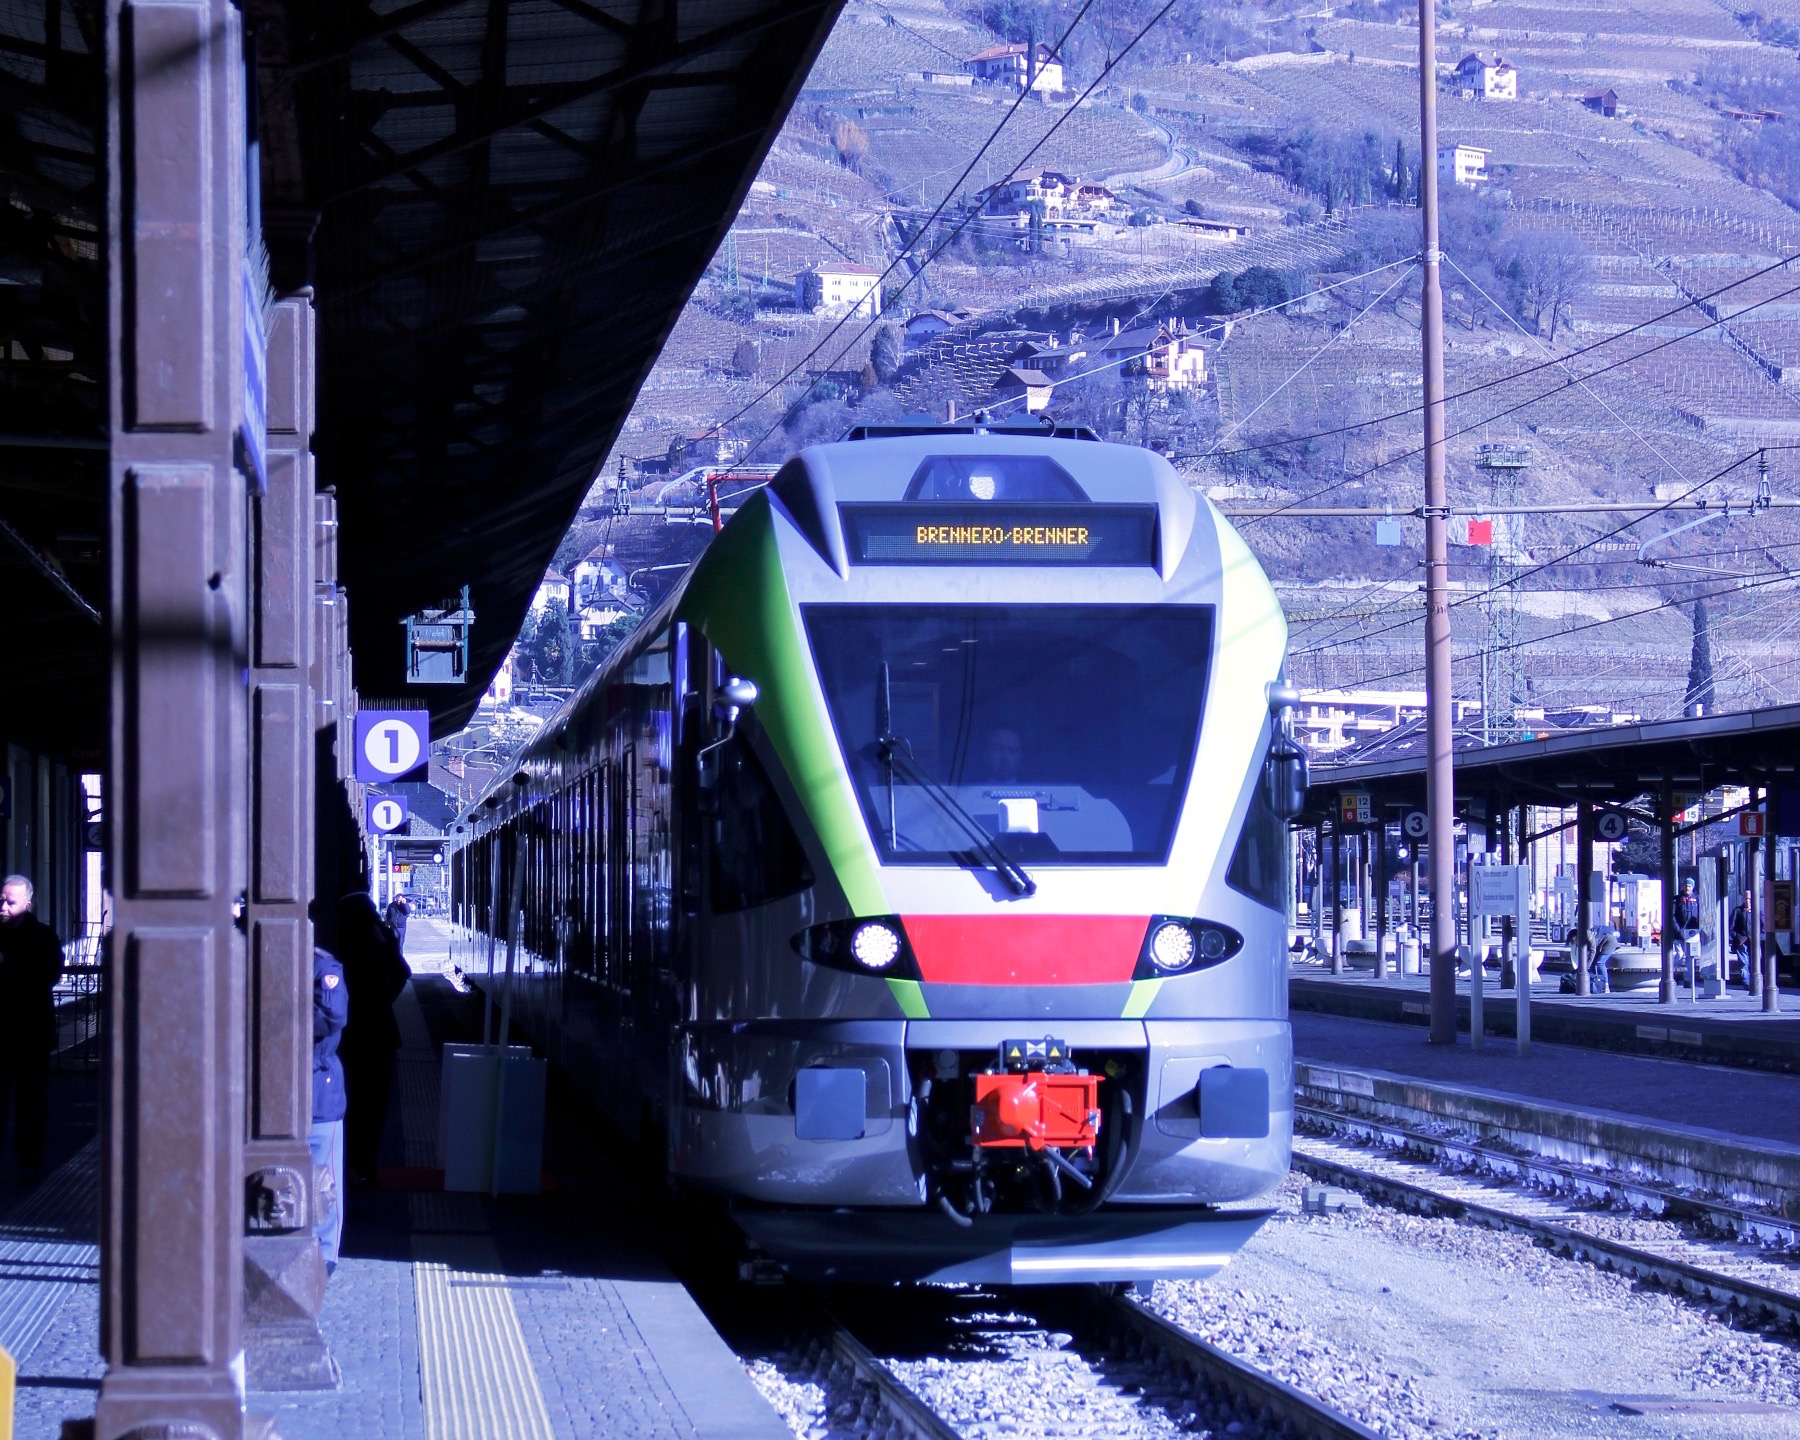 Treni, Bolzano: al via i lavori sull’areale ferroviario. Il progetto verrà avviato entro il 2020